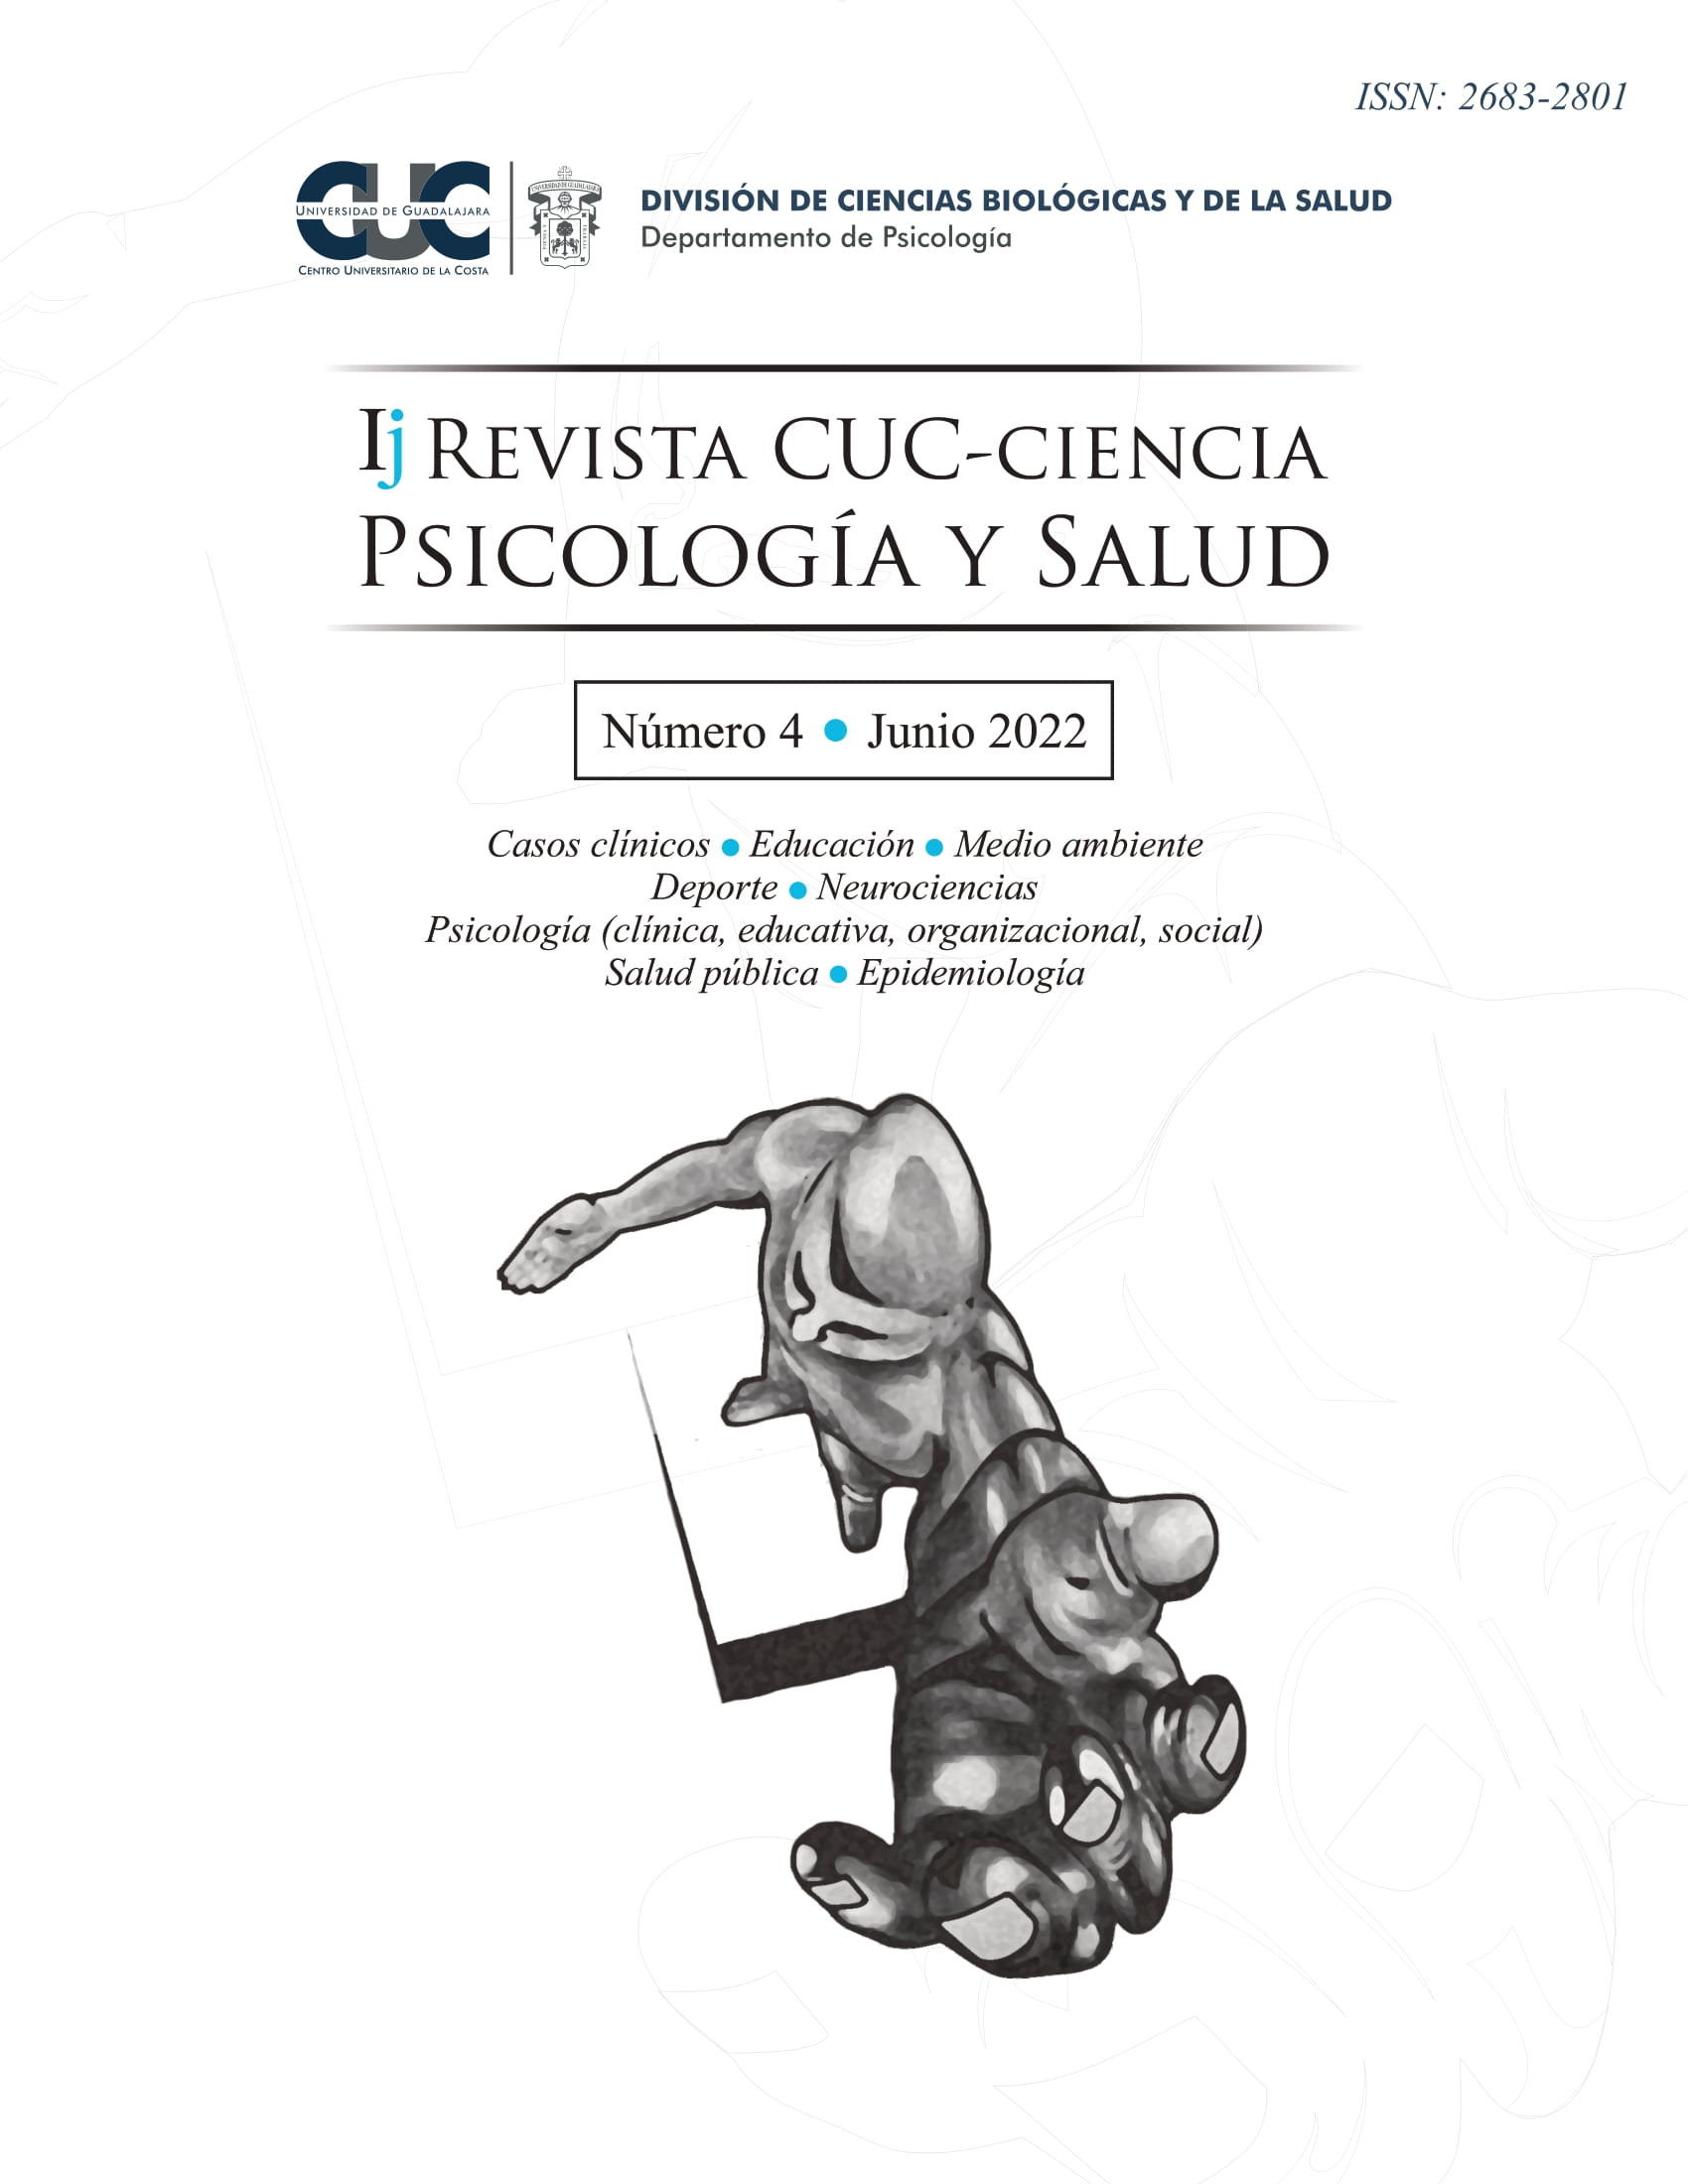 Revista cuc ciencia psicologia y salud digital - 2020